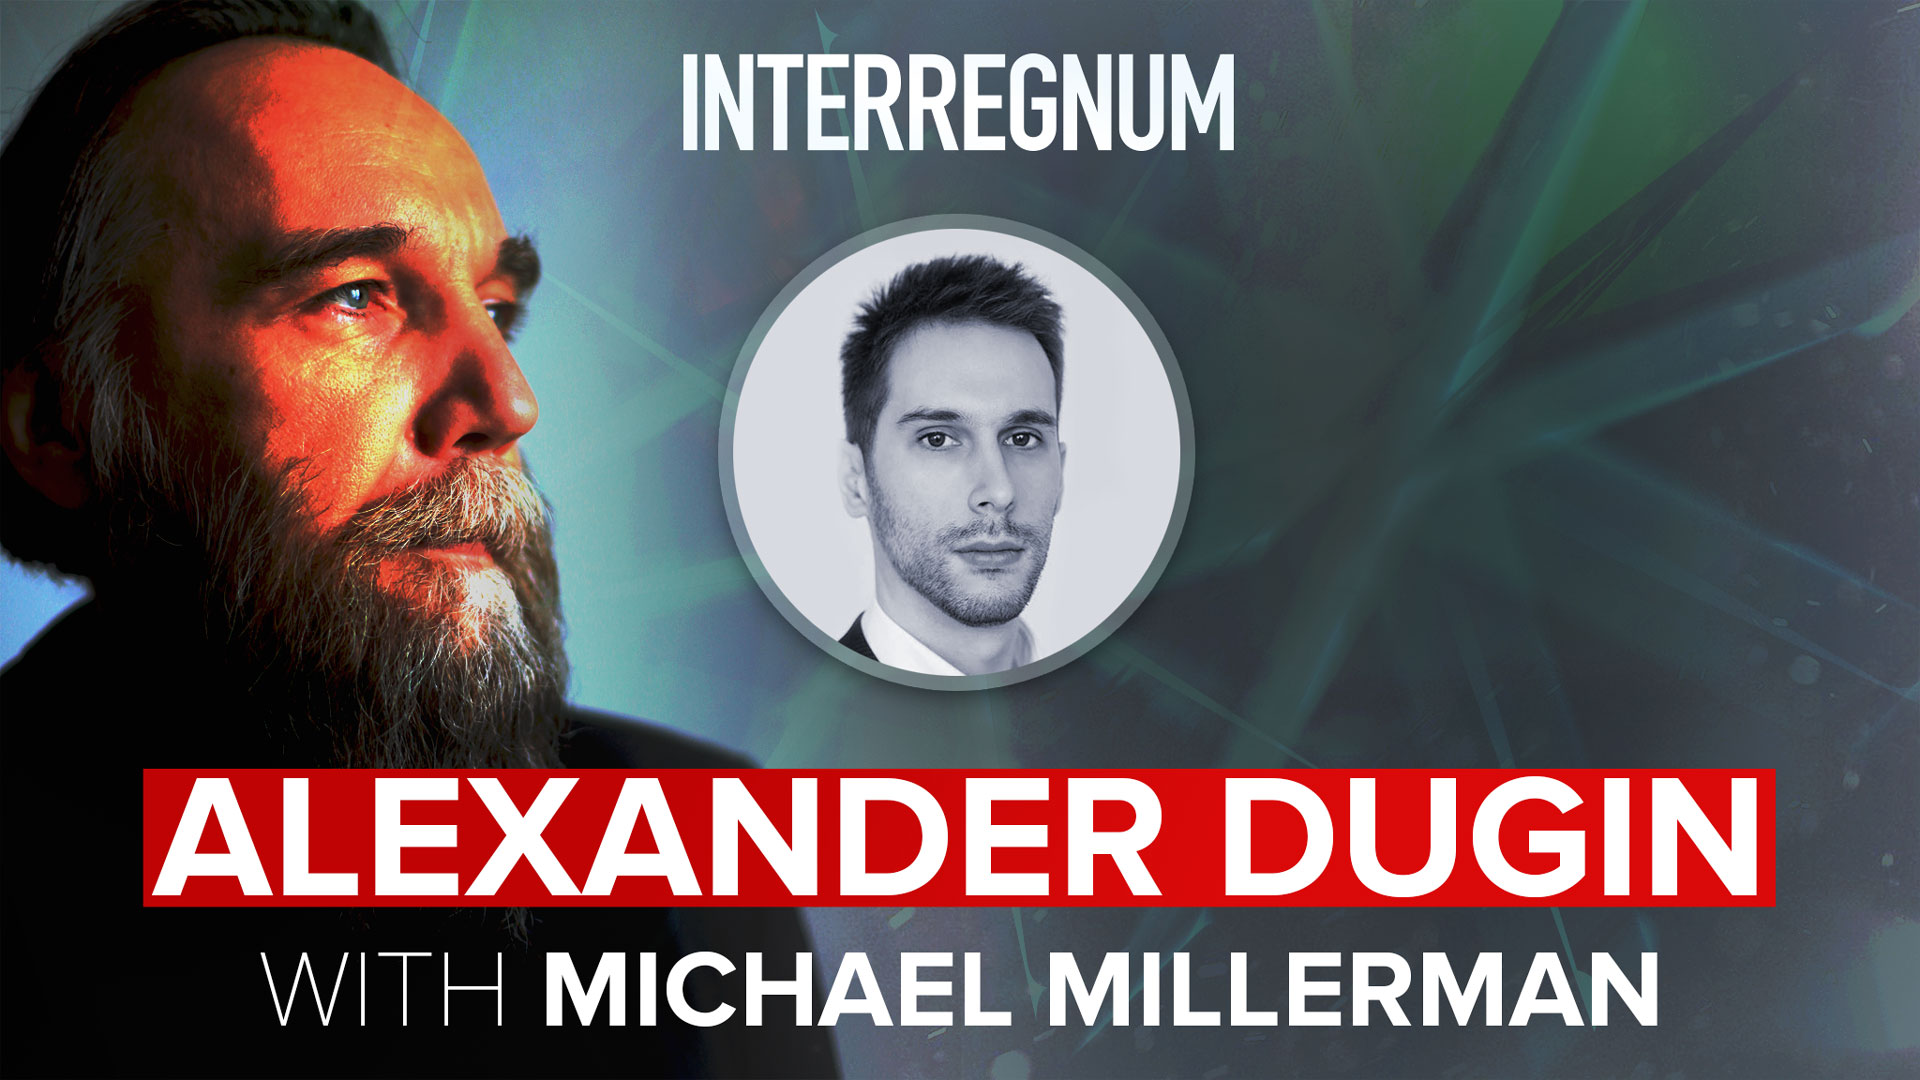 Alexander Dugin with Michael Millerman